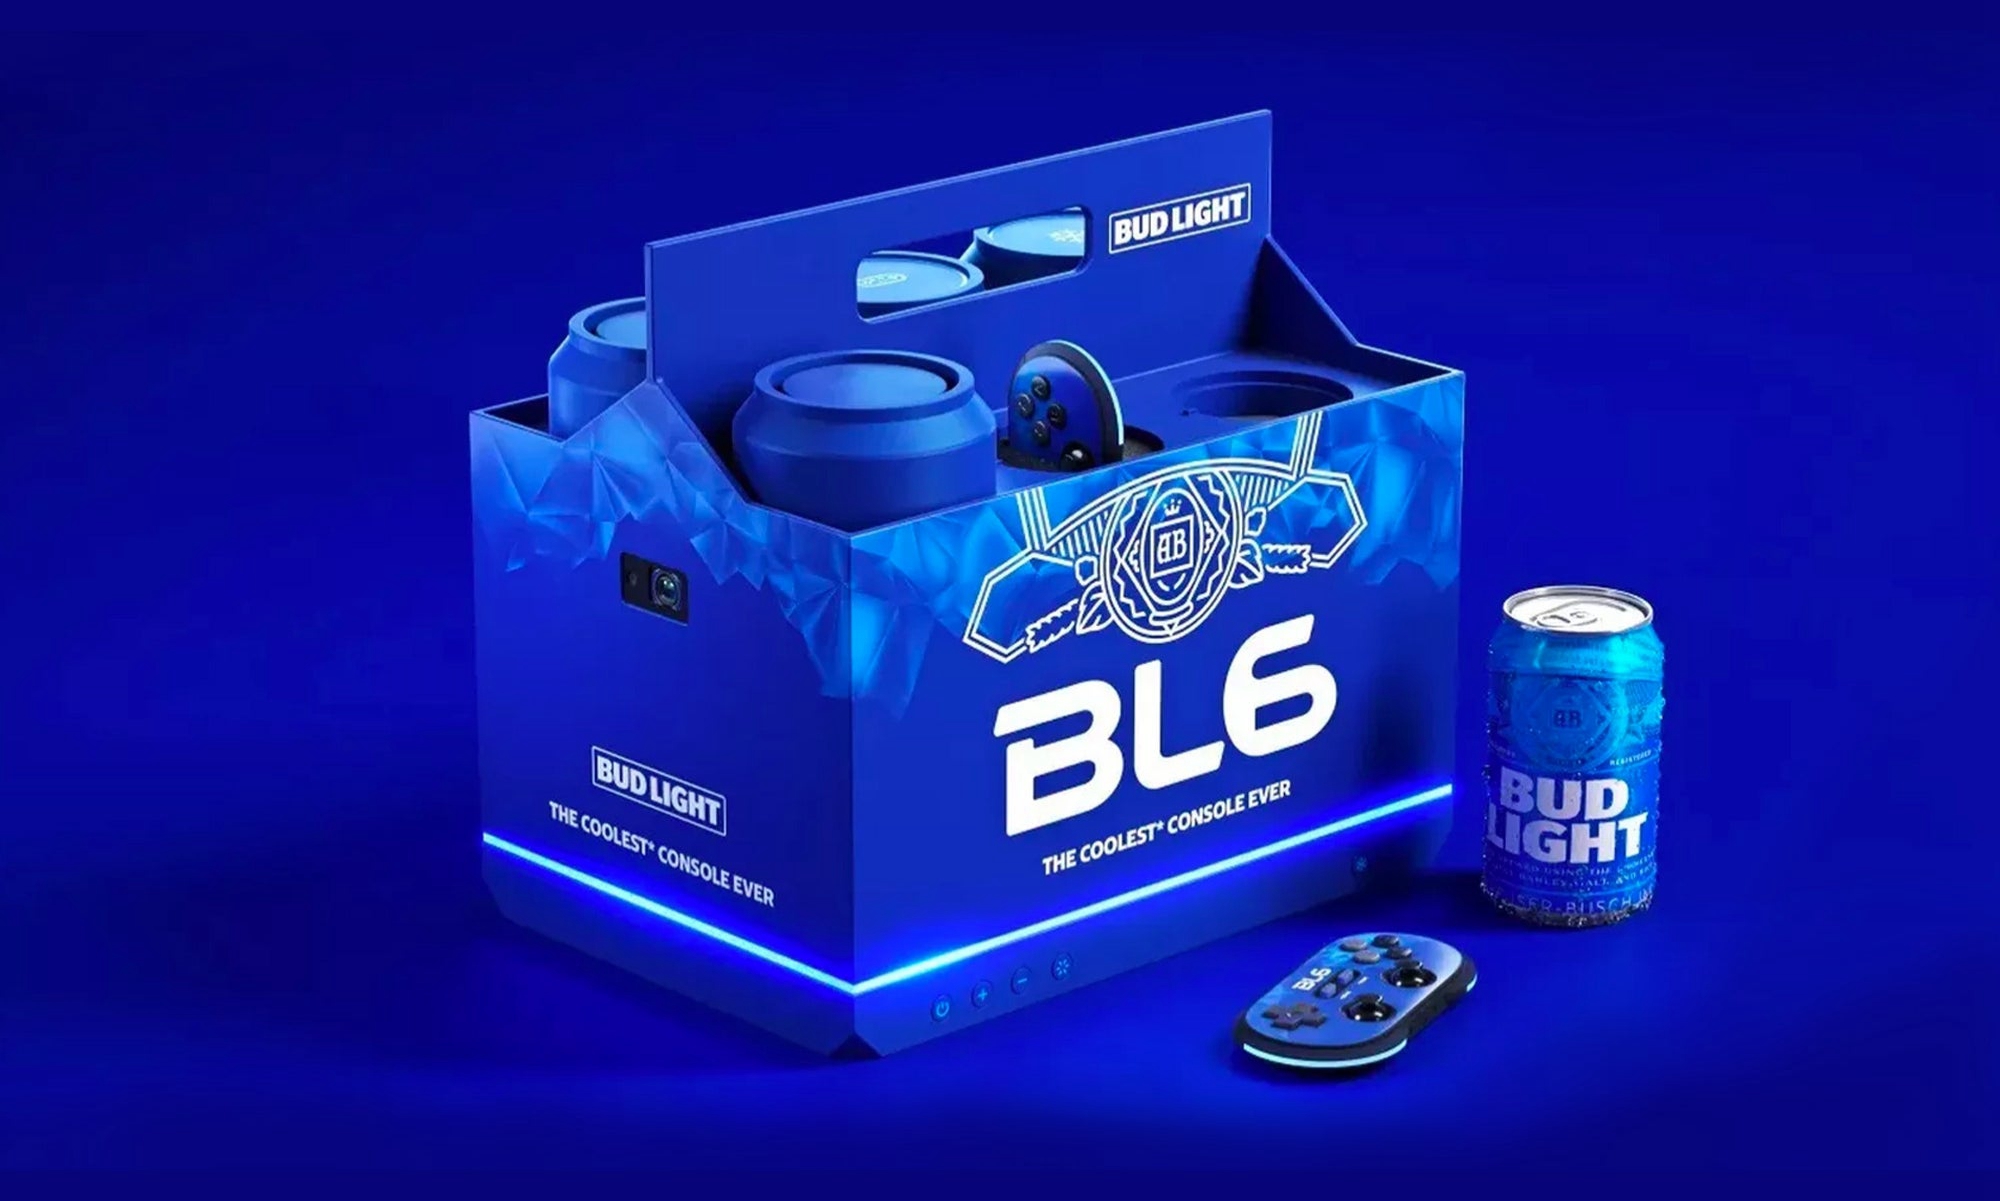 百威推出 Bud Light BL6 全新游戏主机